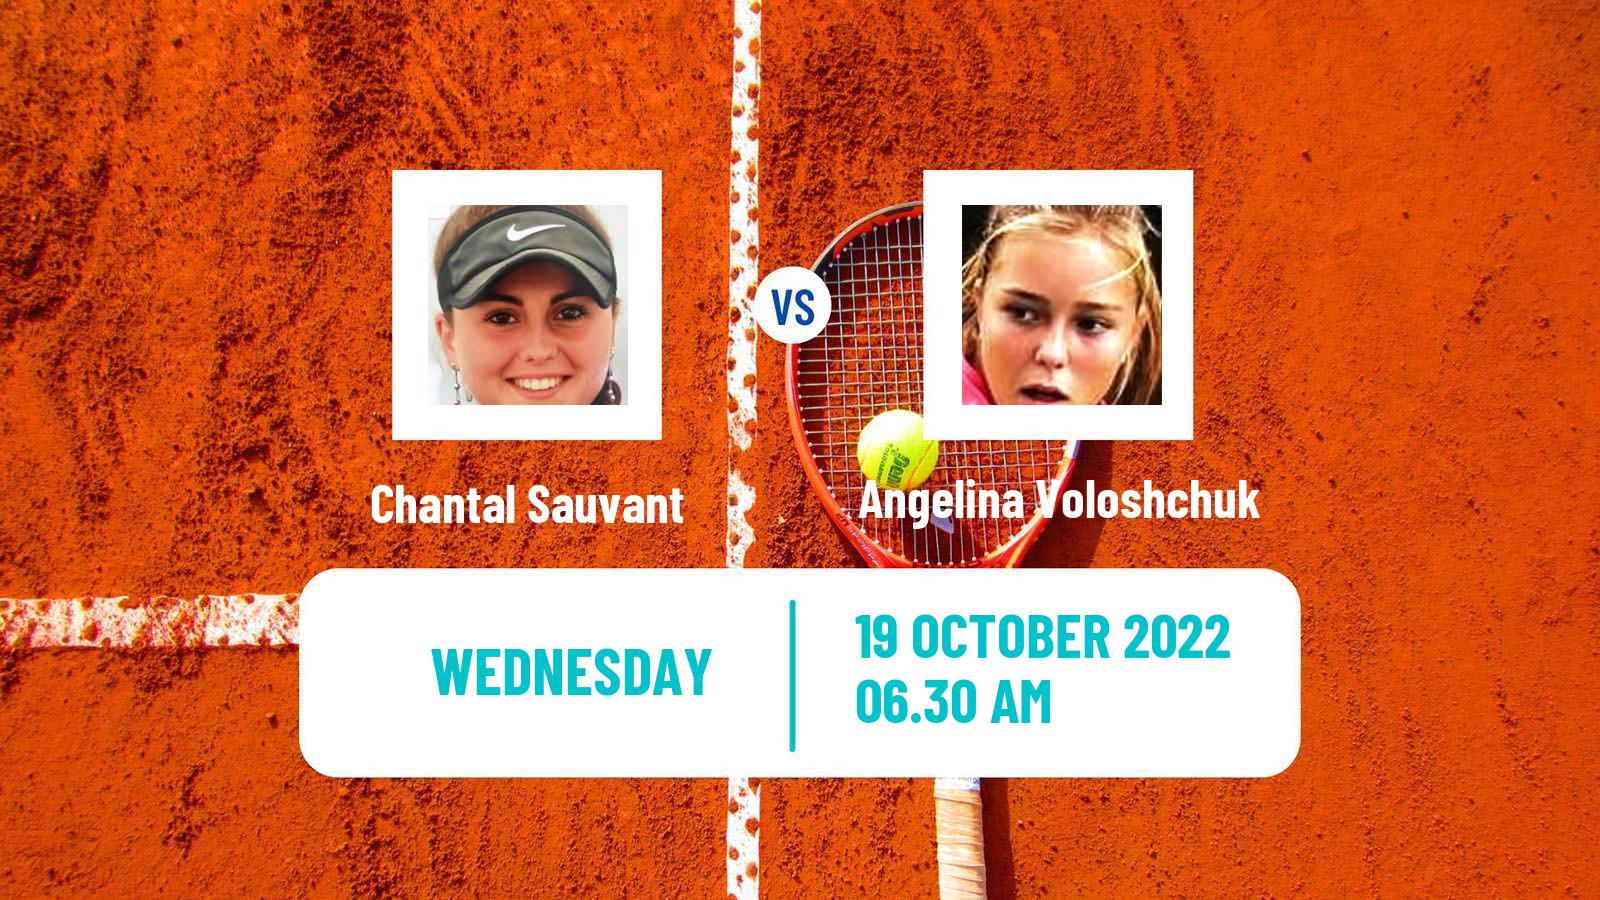 Tennis ITF Tournaments Chantal Sauvant - Angelina Voloshchuk